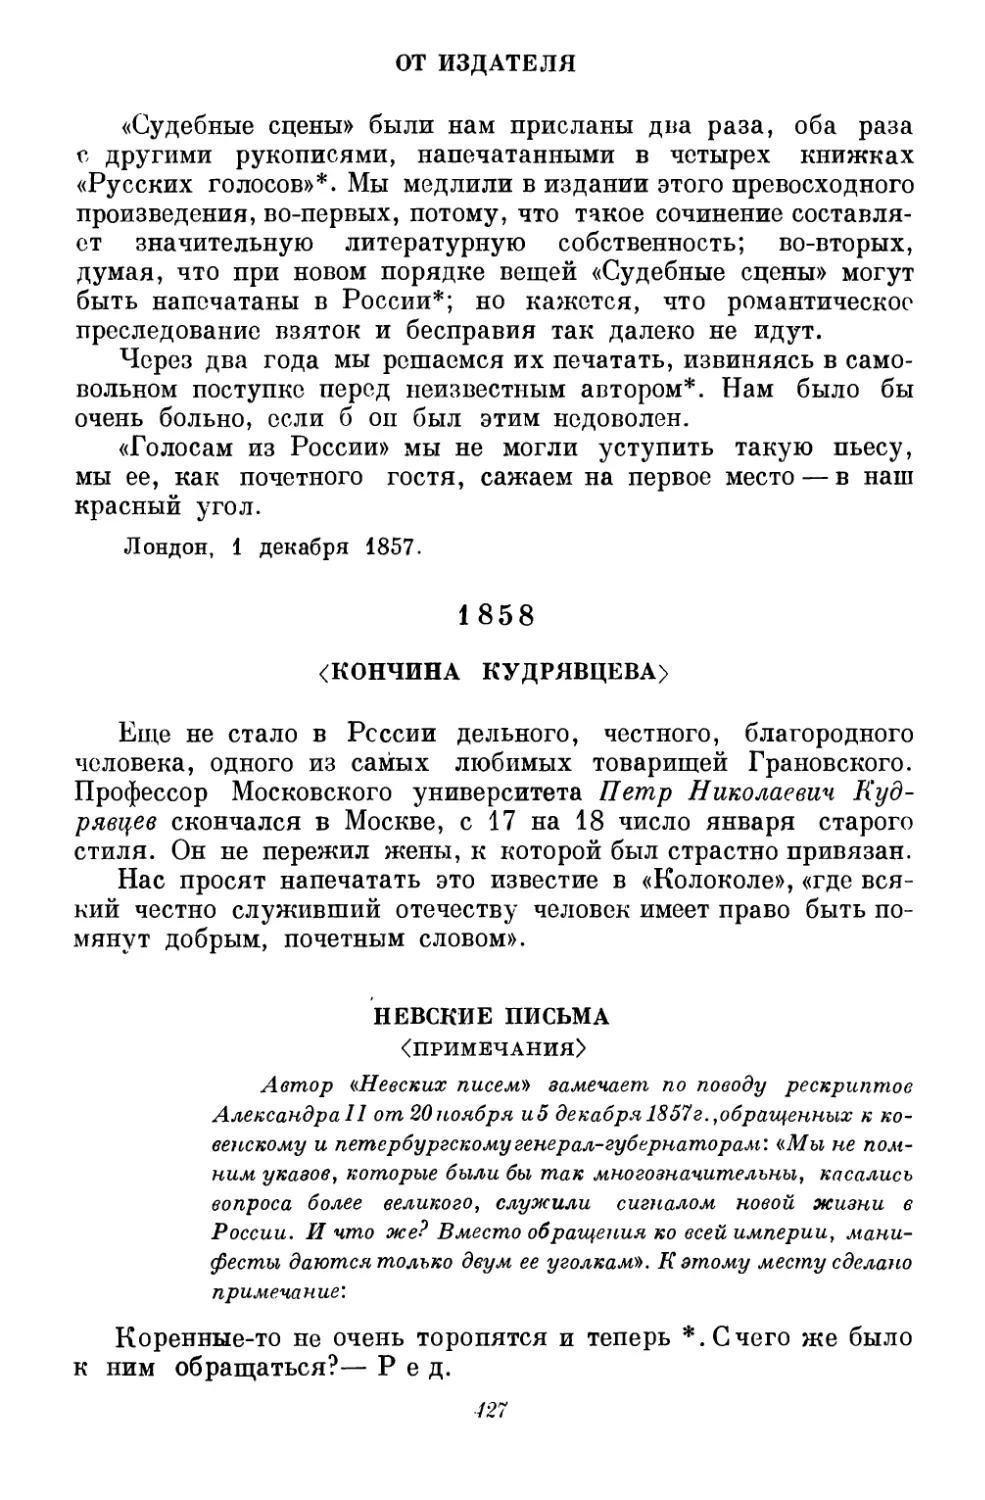 1858
Невские письма <Примечания>